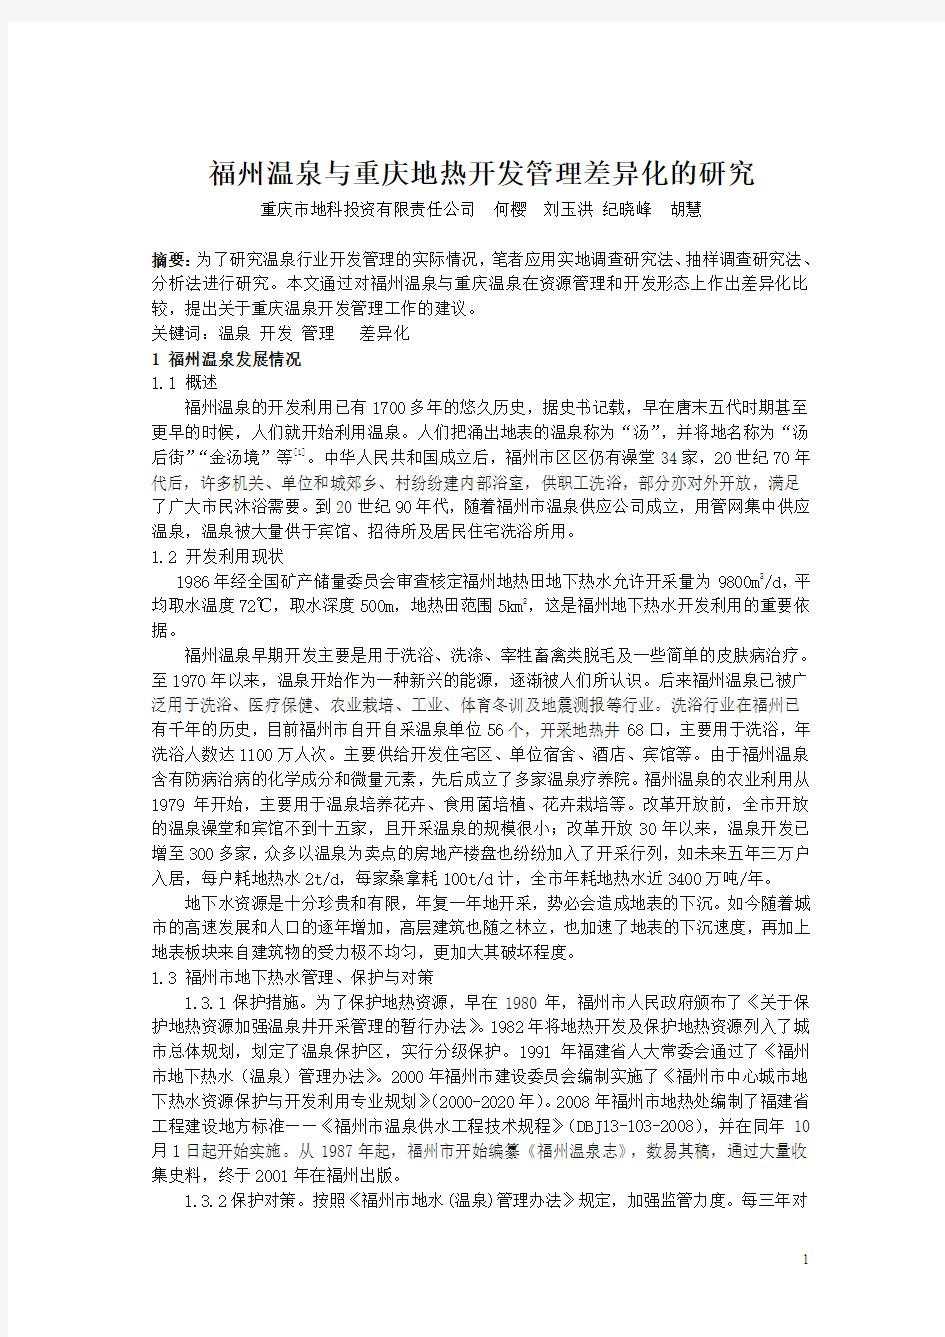 福州温泉与重庆地热开发管理的差异化研究